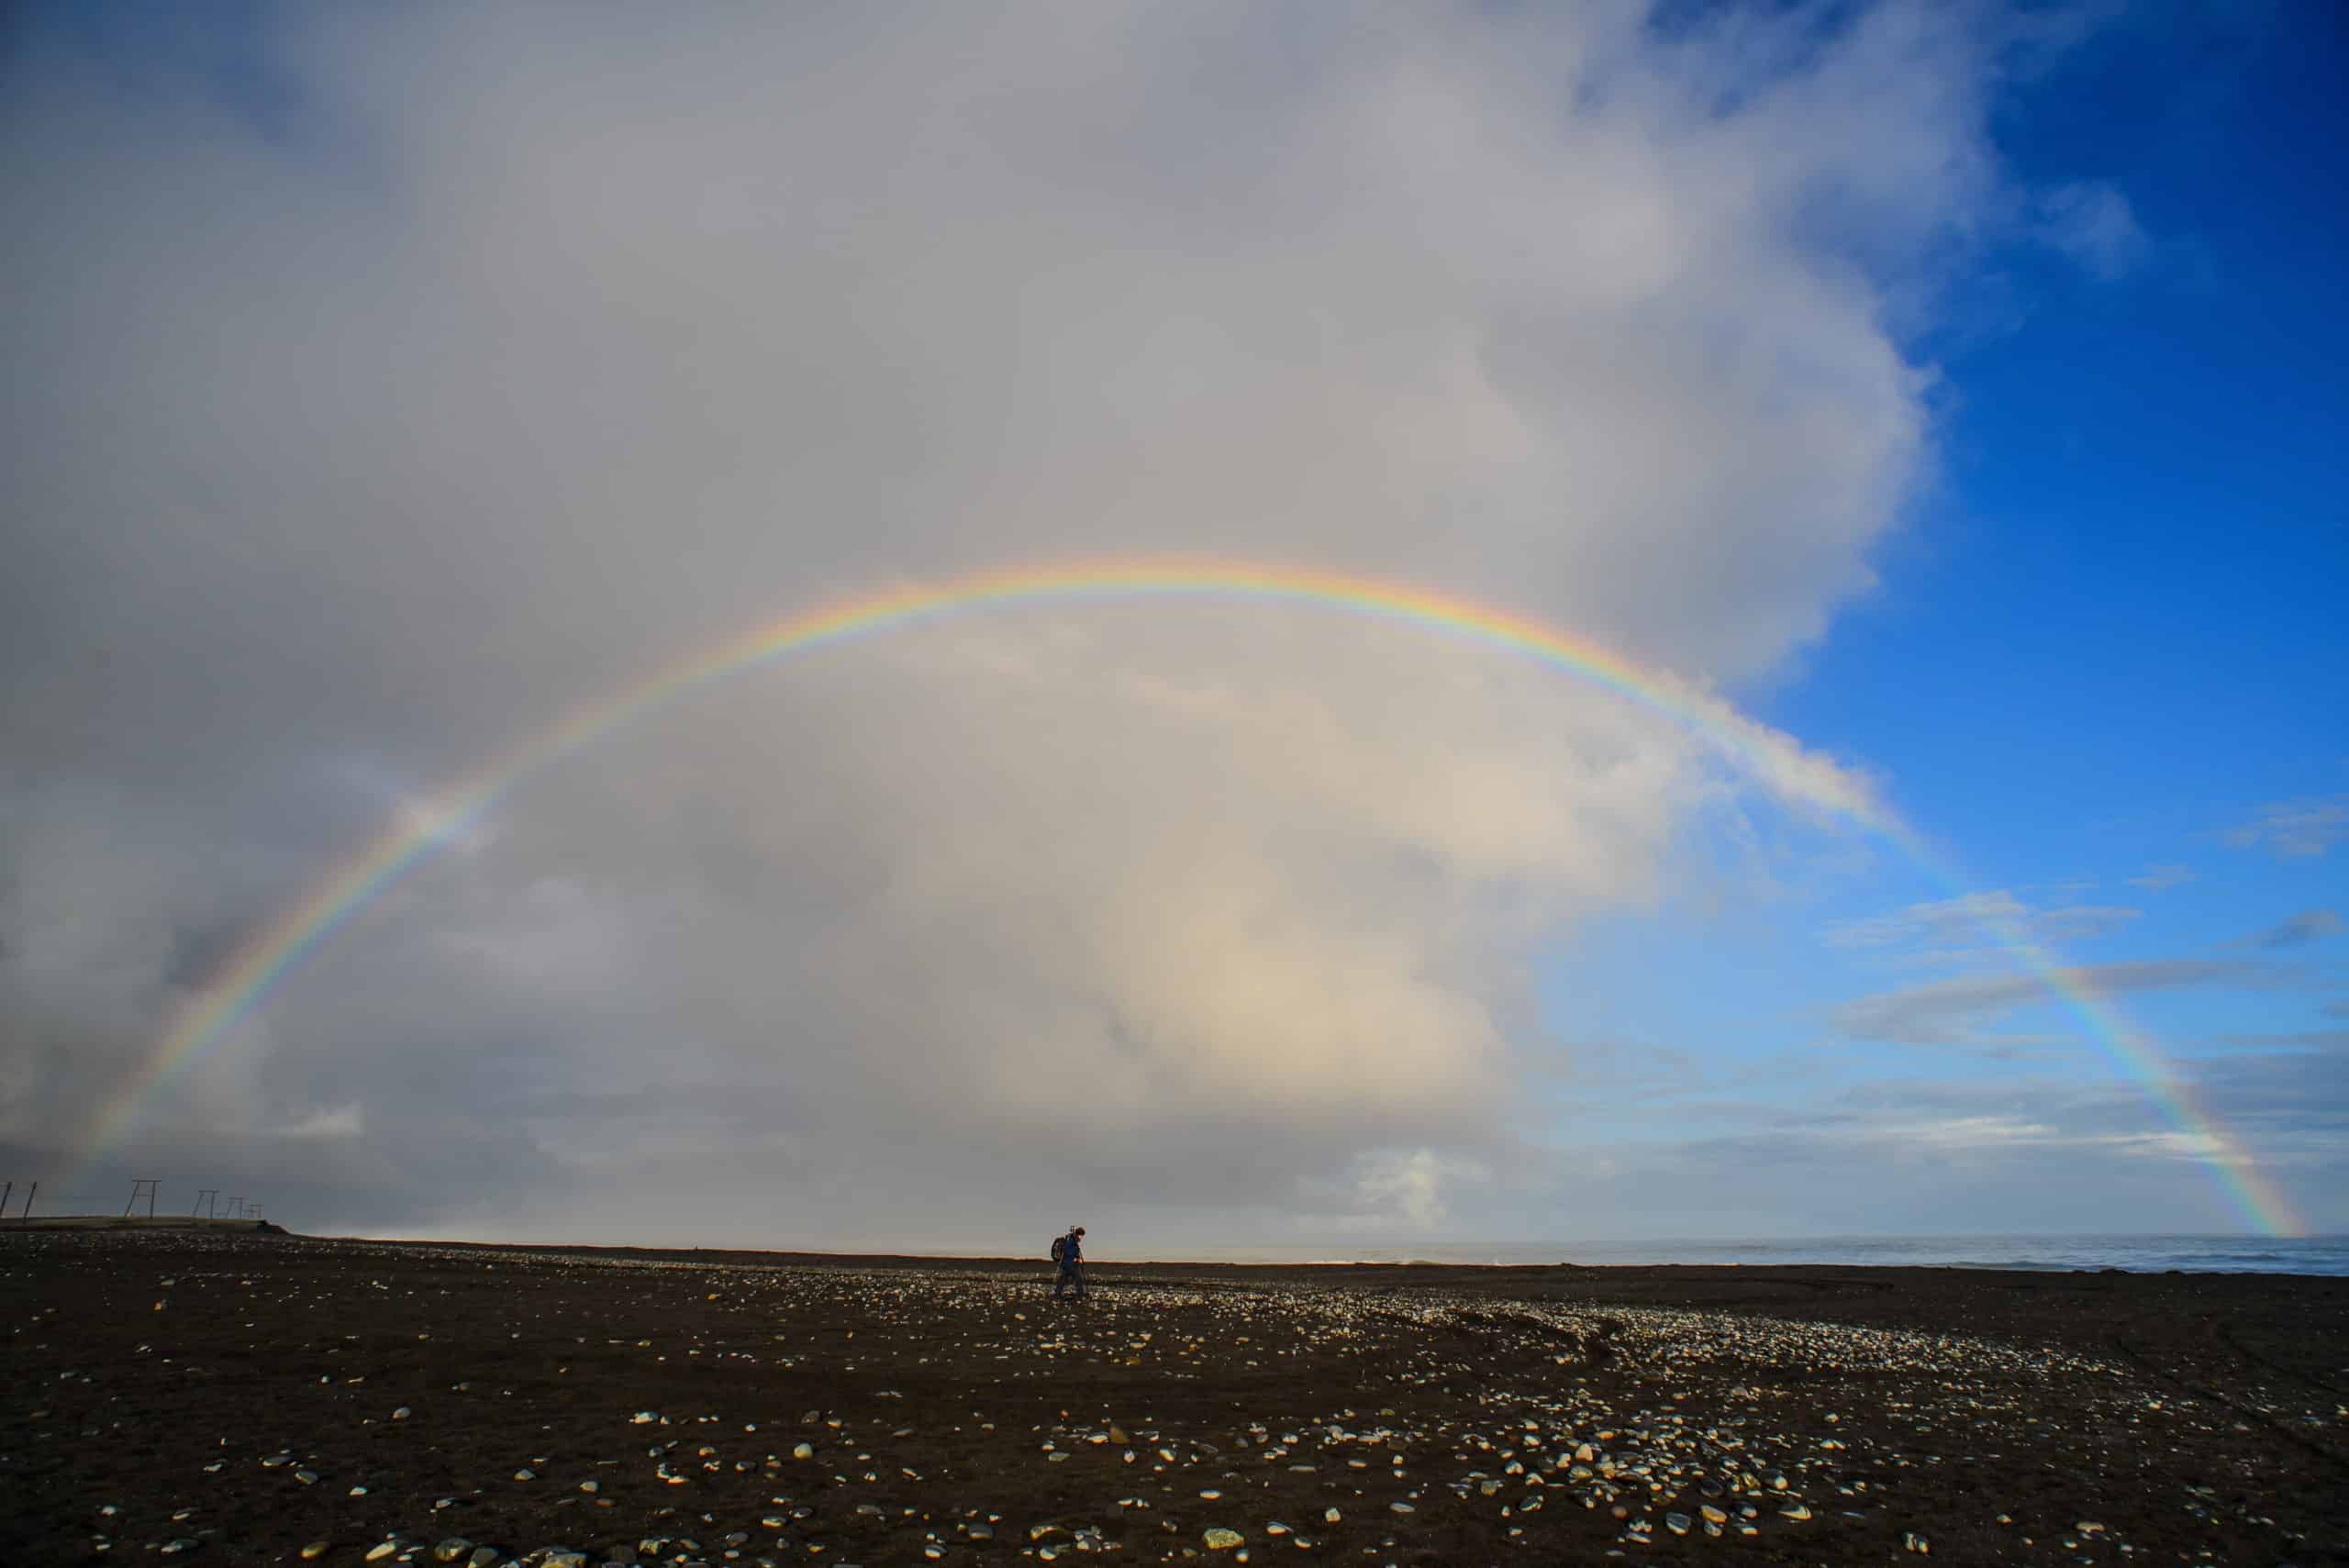 A man walking beneath a rainbow at the beach.